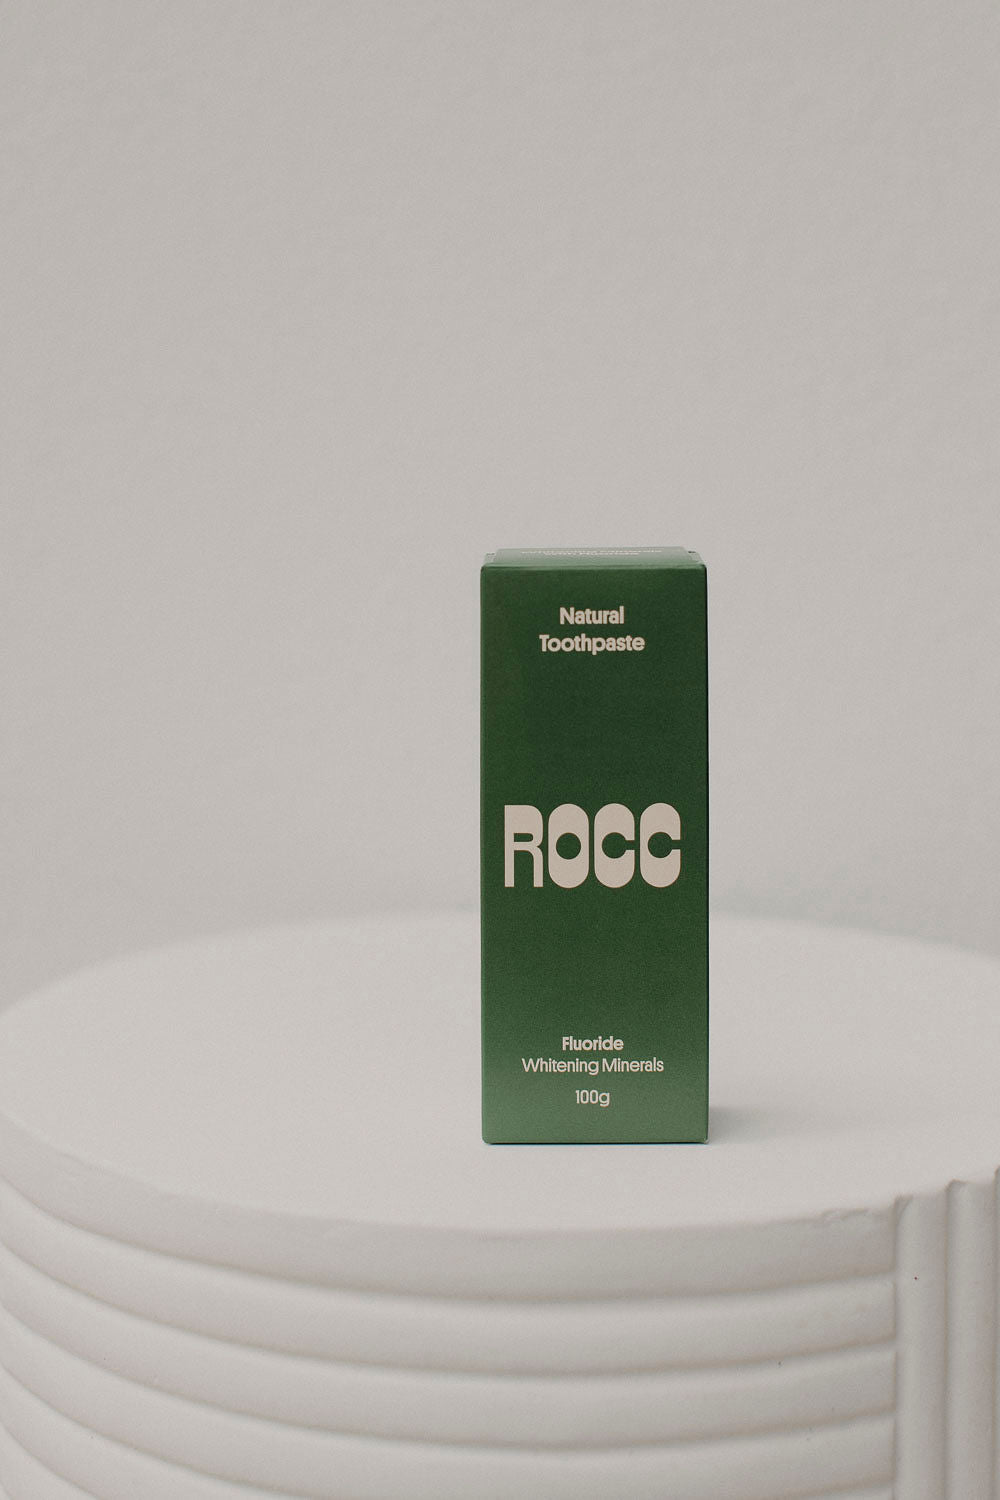 Rocc Naturals Toothpaste 100g - Whitening Minerals + Fluoride